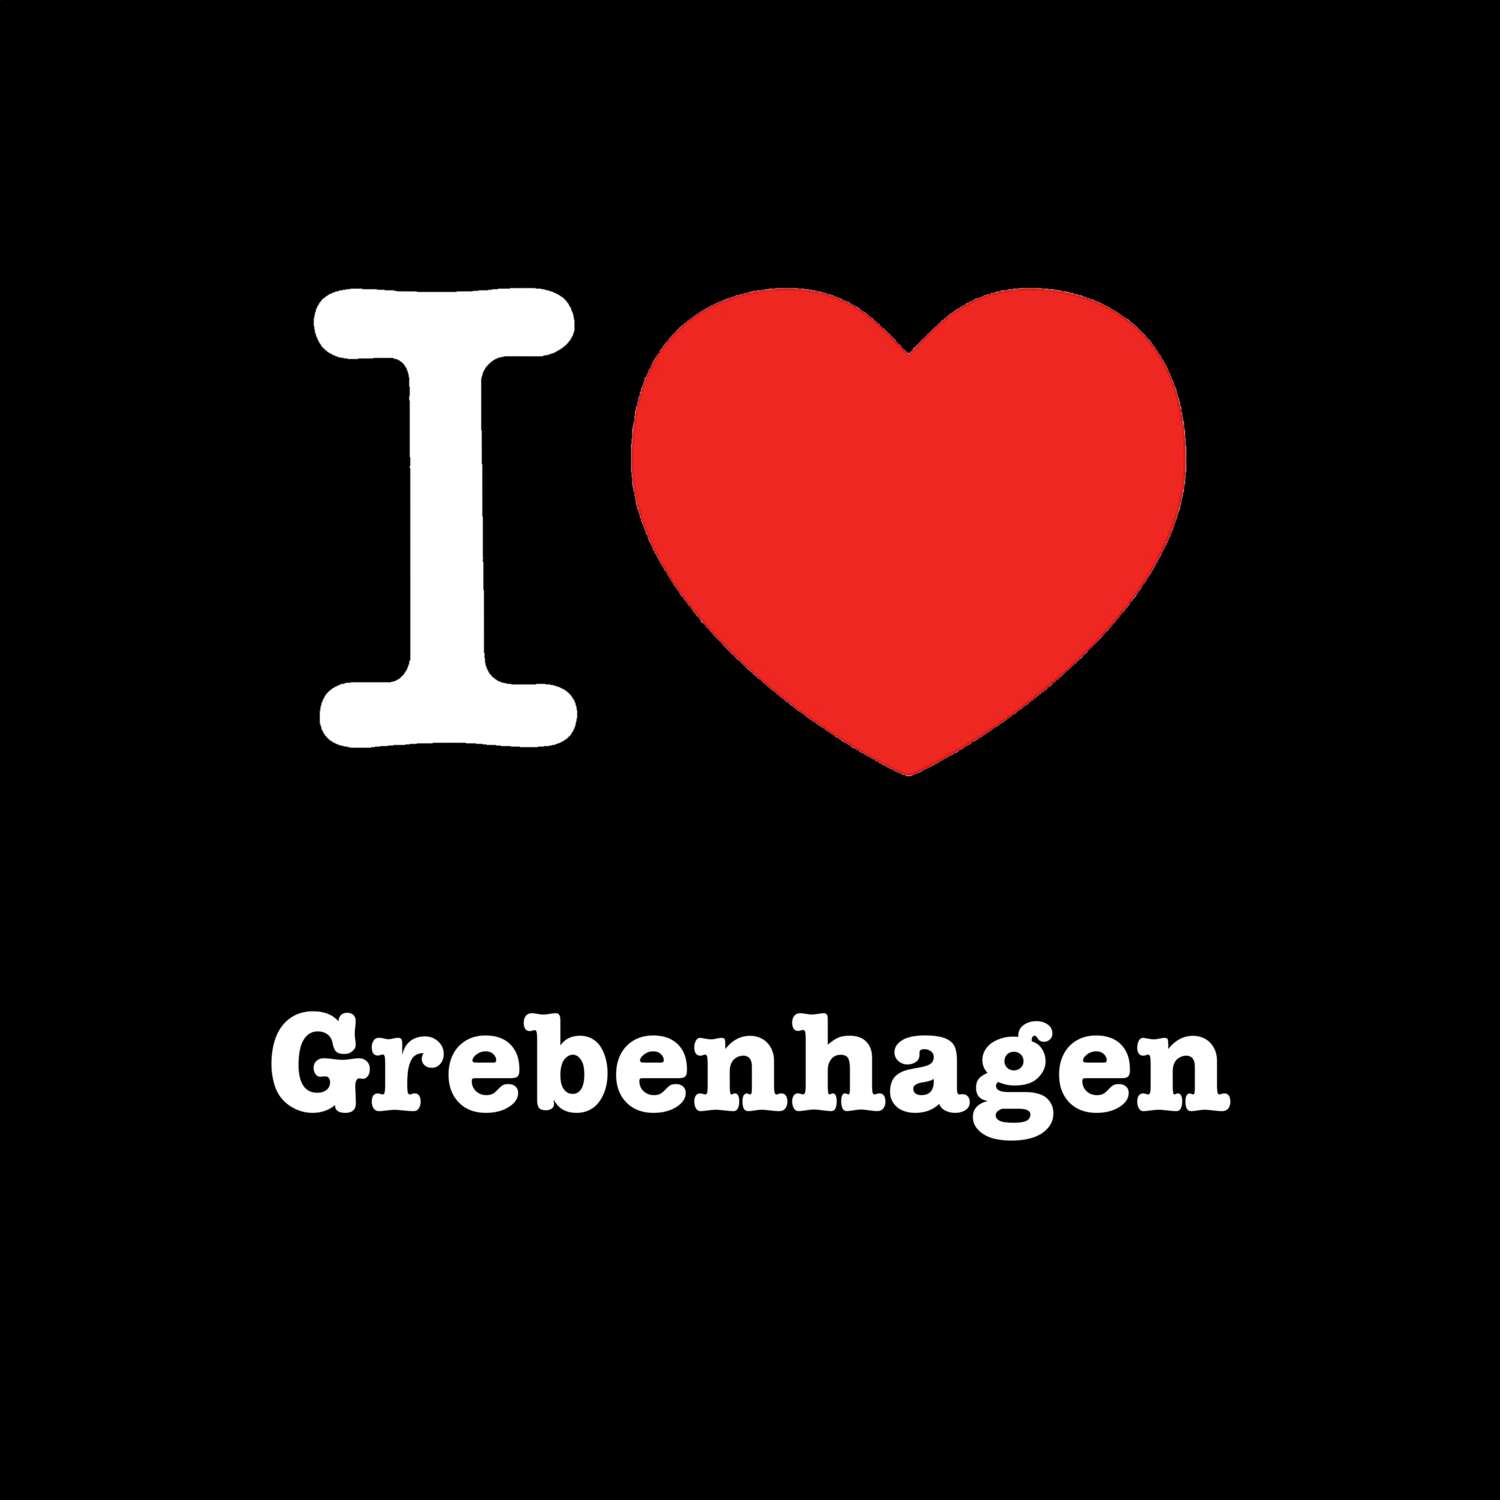 Grebenhagen T-Shirt »I love«